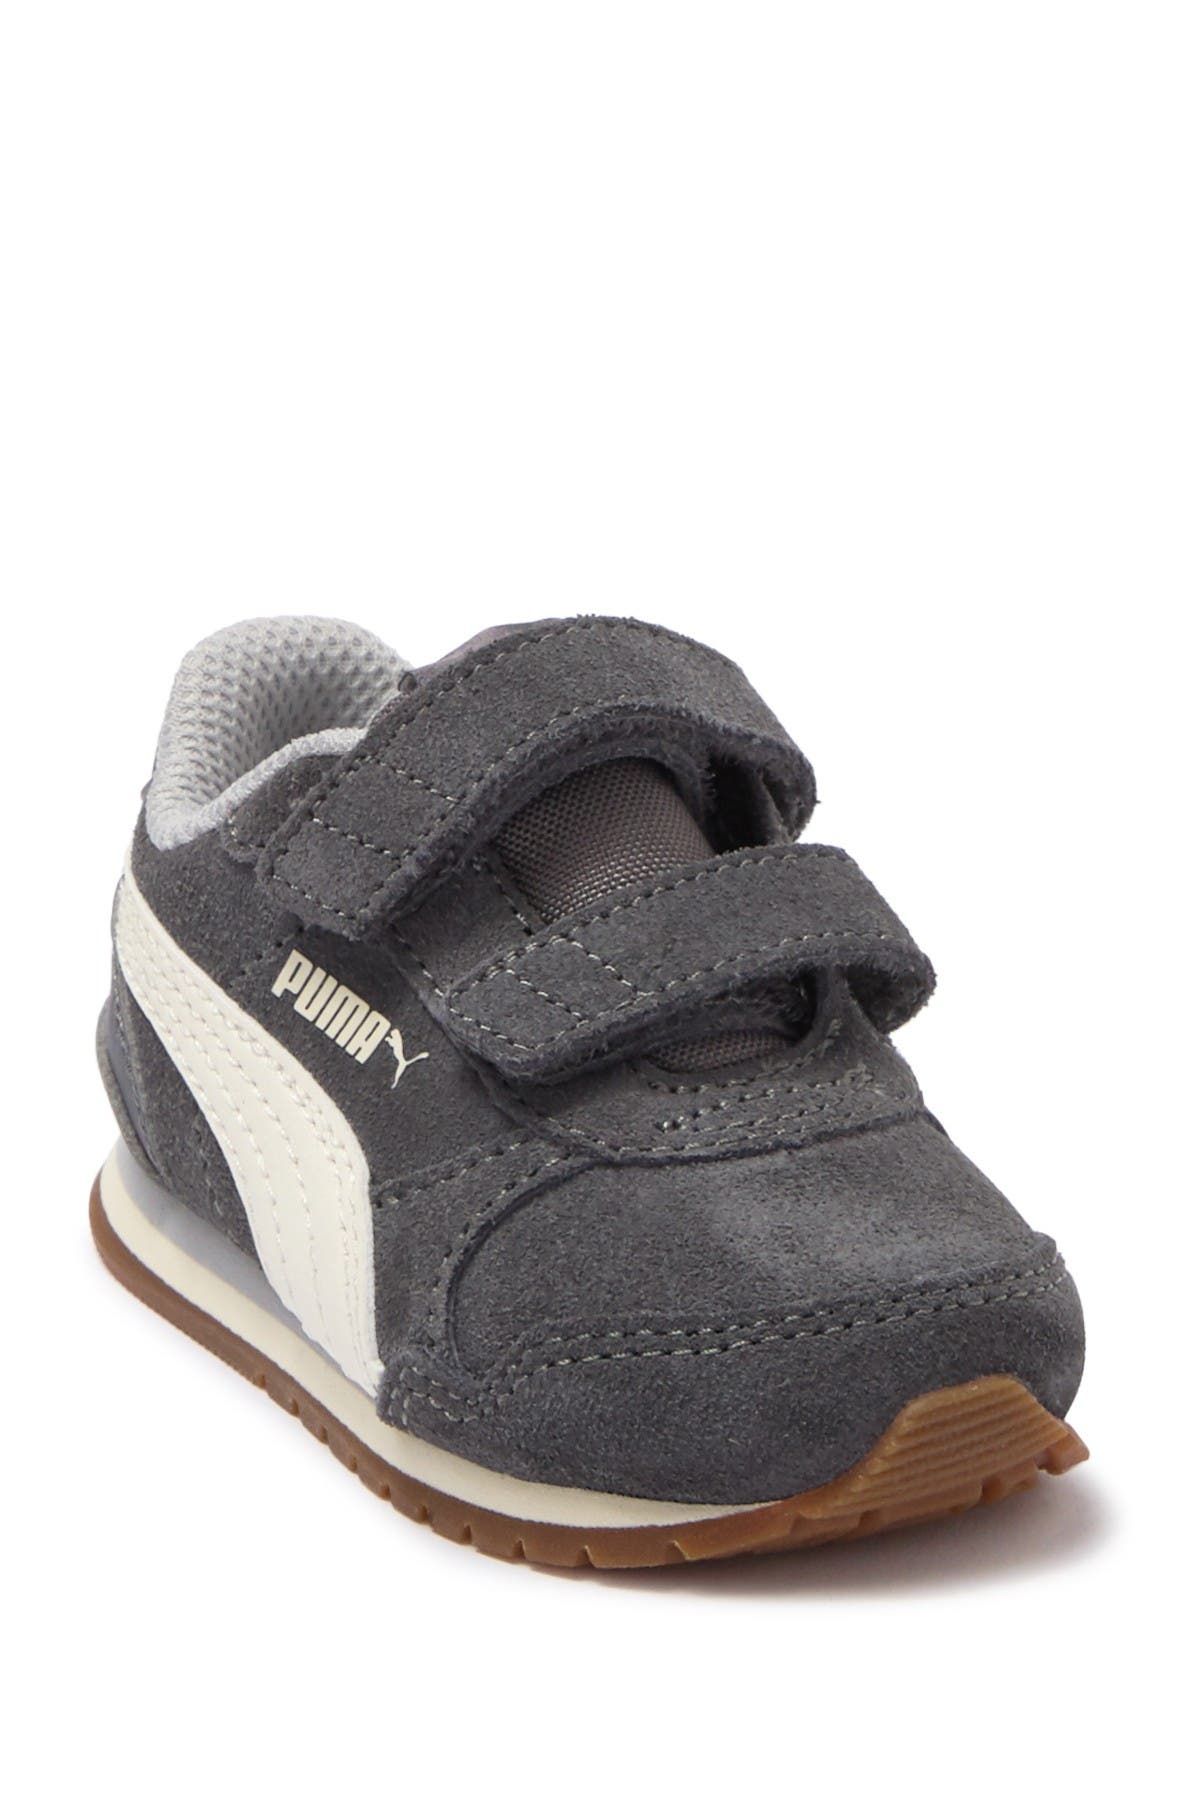 Toddler Boys' Shoes | Nordstrom Rack